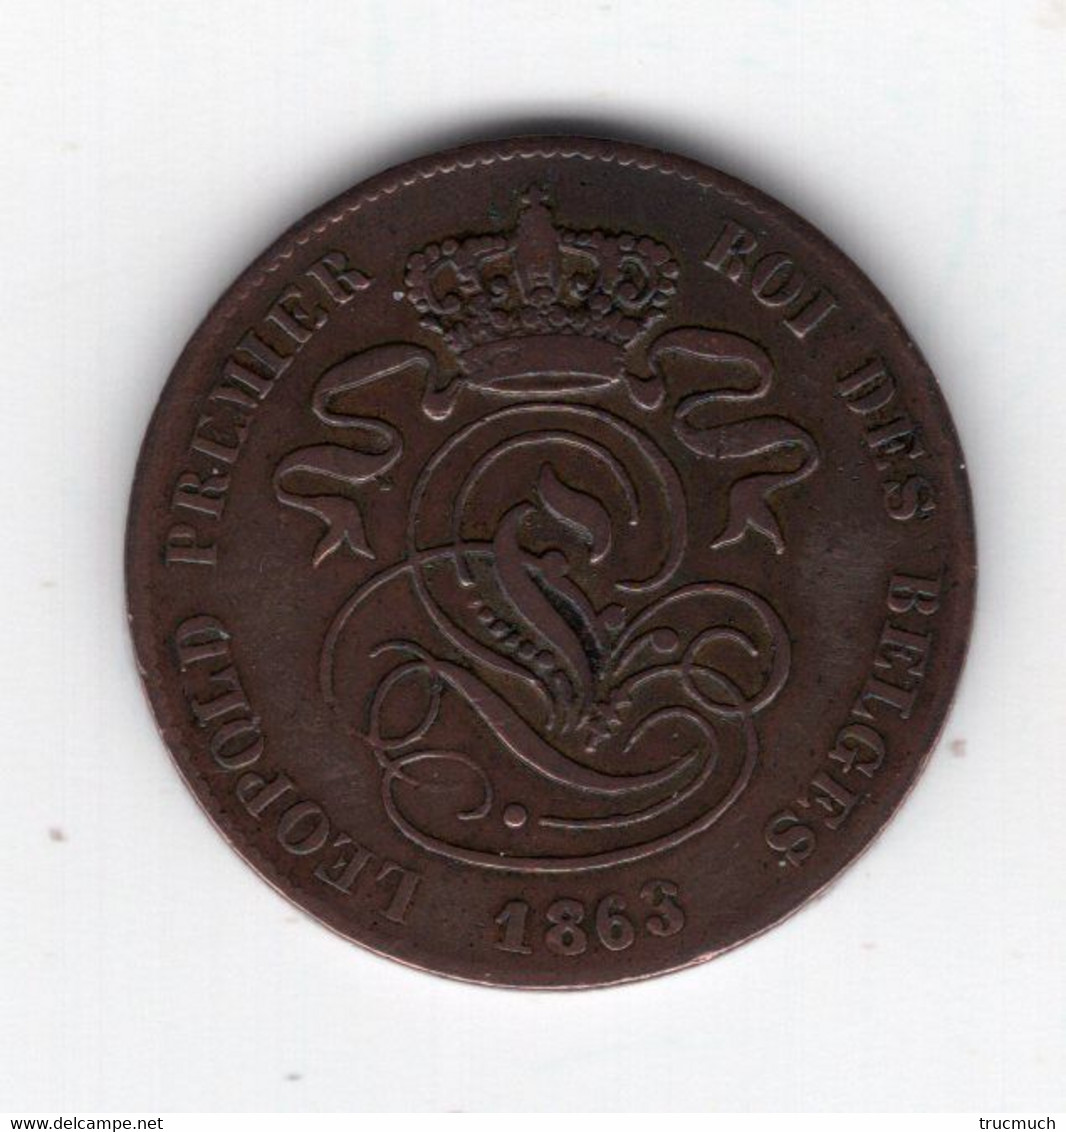 15 - LEOPOLD Ier - 2 Centimes 1863 --* M 111* - 2 Cent